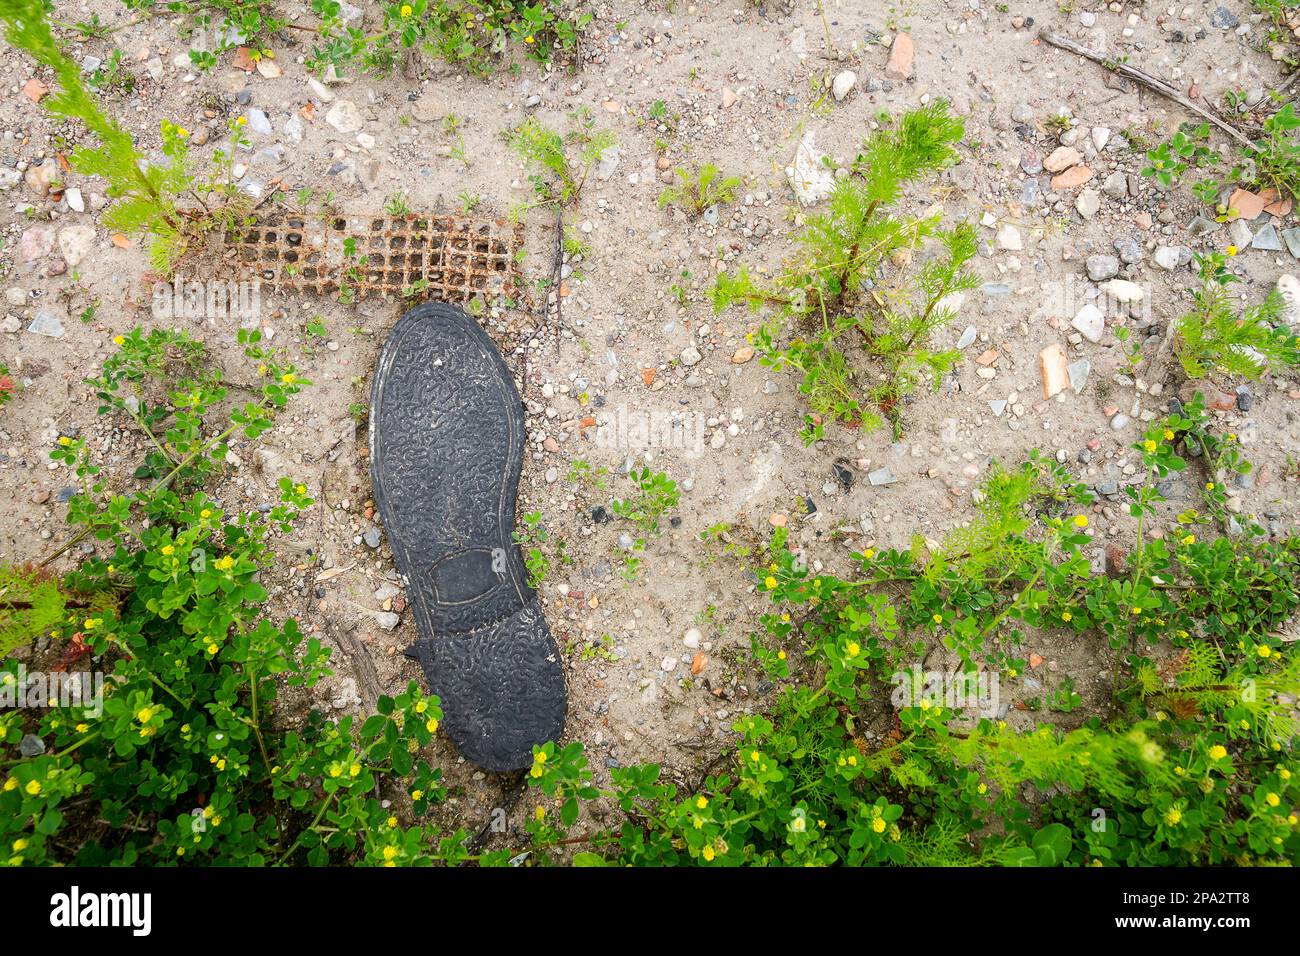 Die alte schwarze Gummisohle liegt auf dem Boden. Ökologiekonzept. Stockfoto